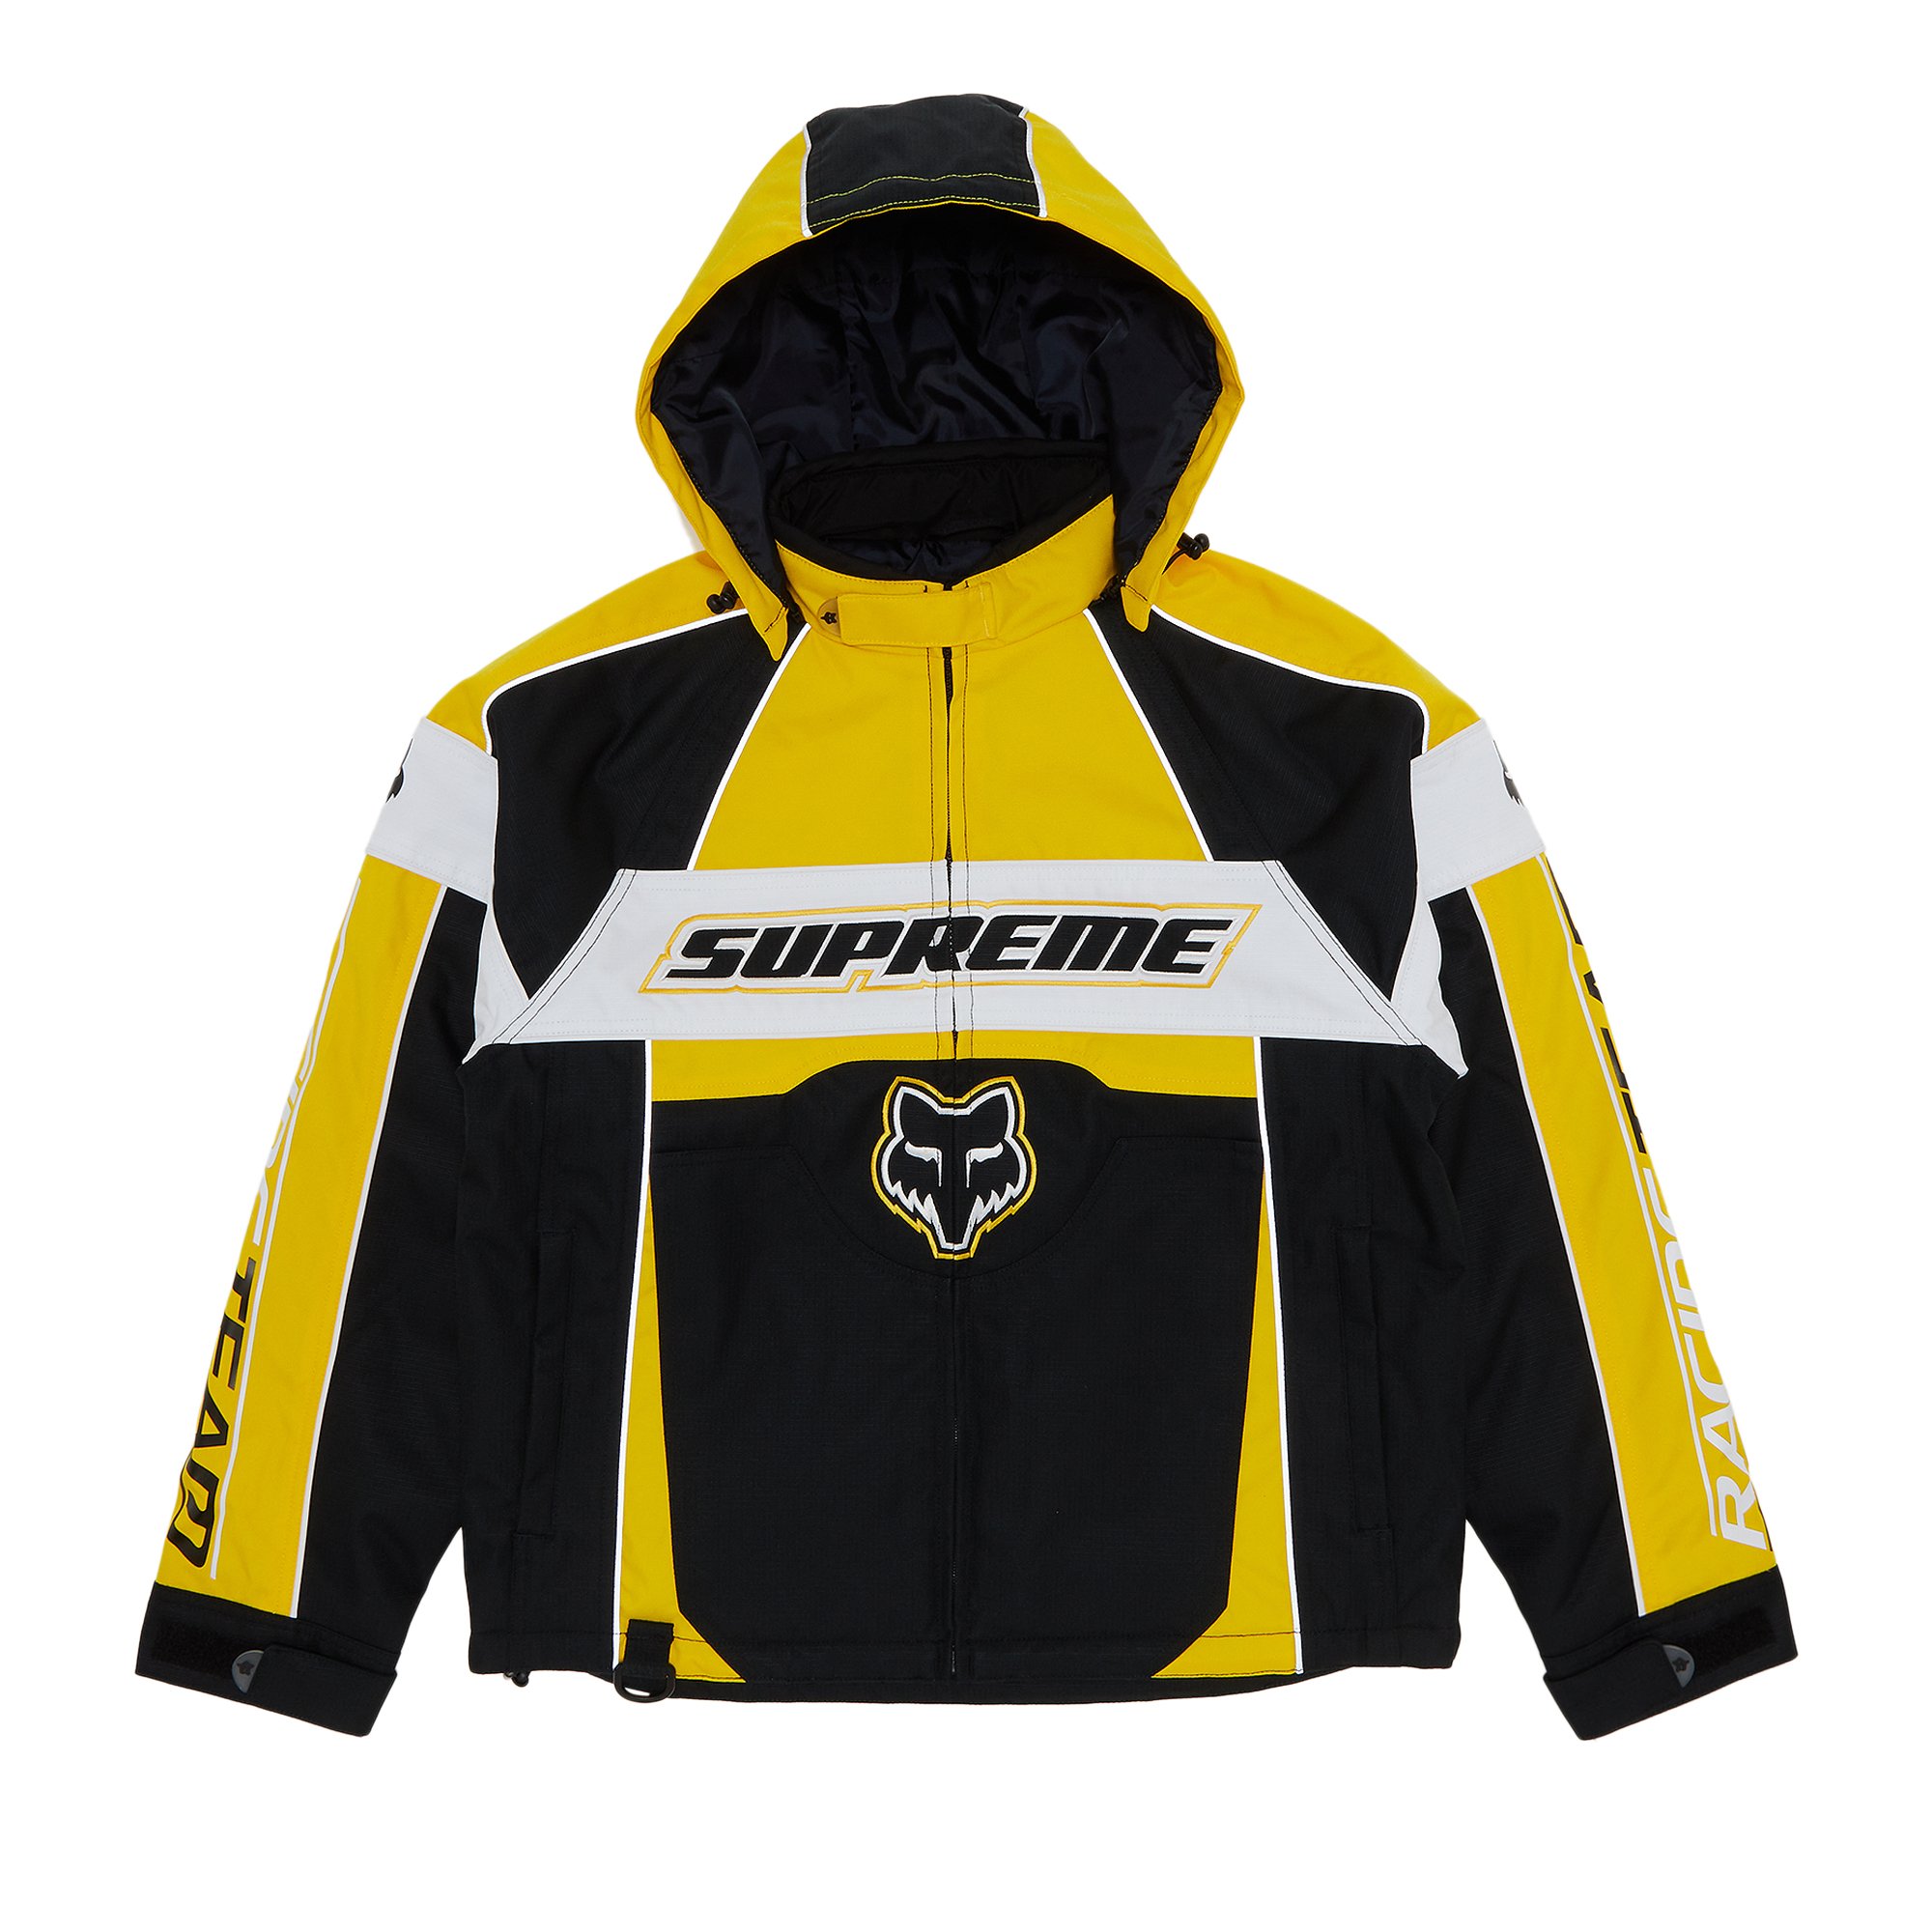 Supreme x Fox Racing Jacket 'Yellow'